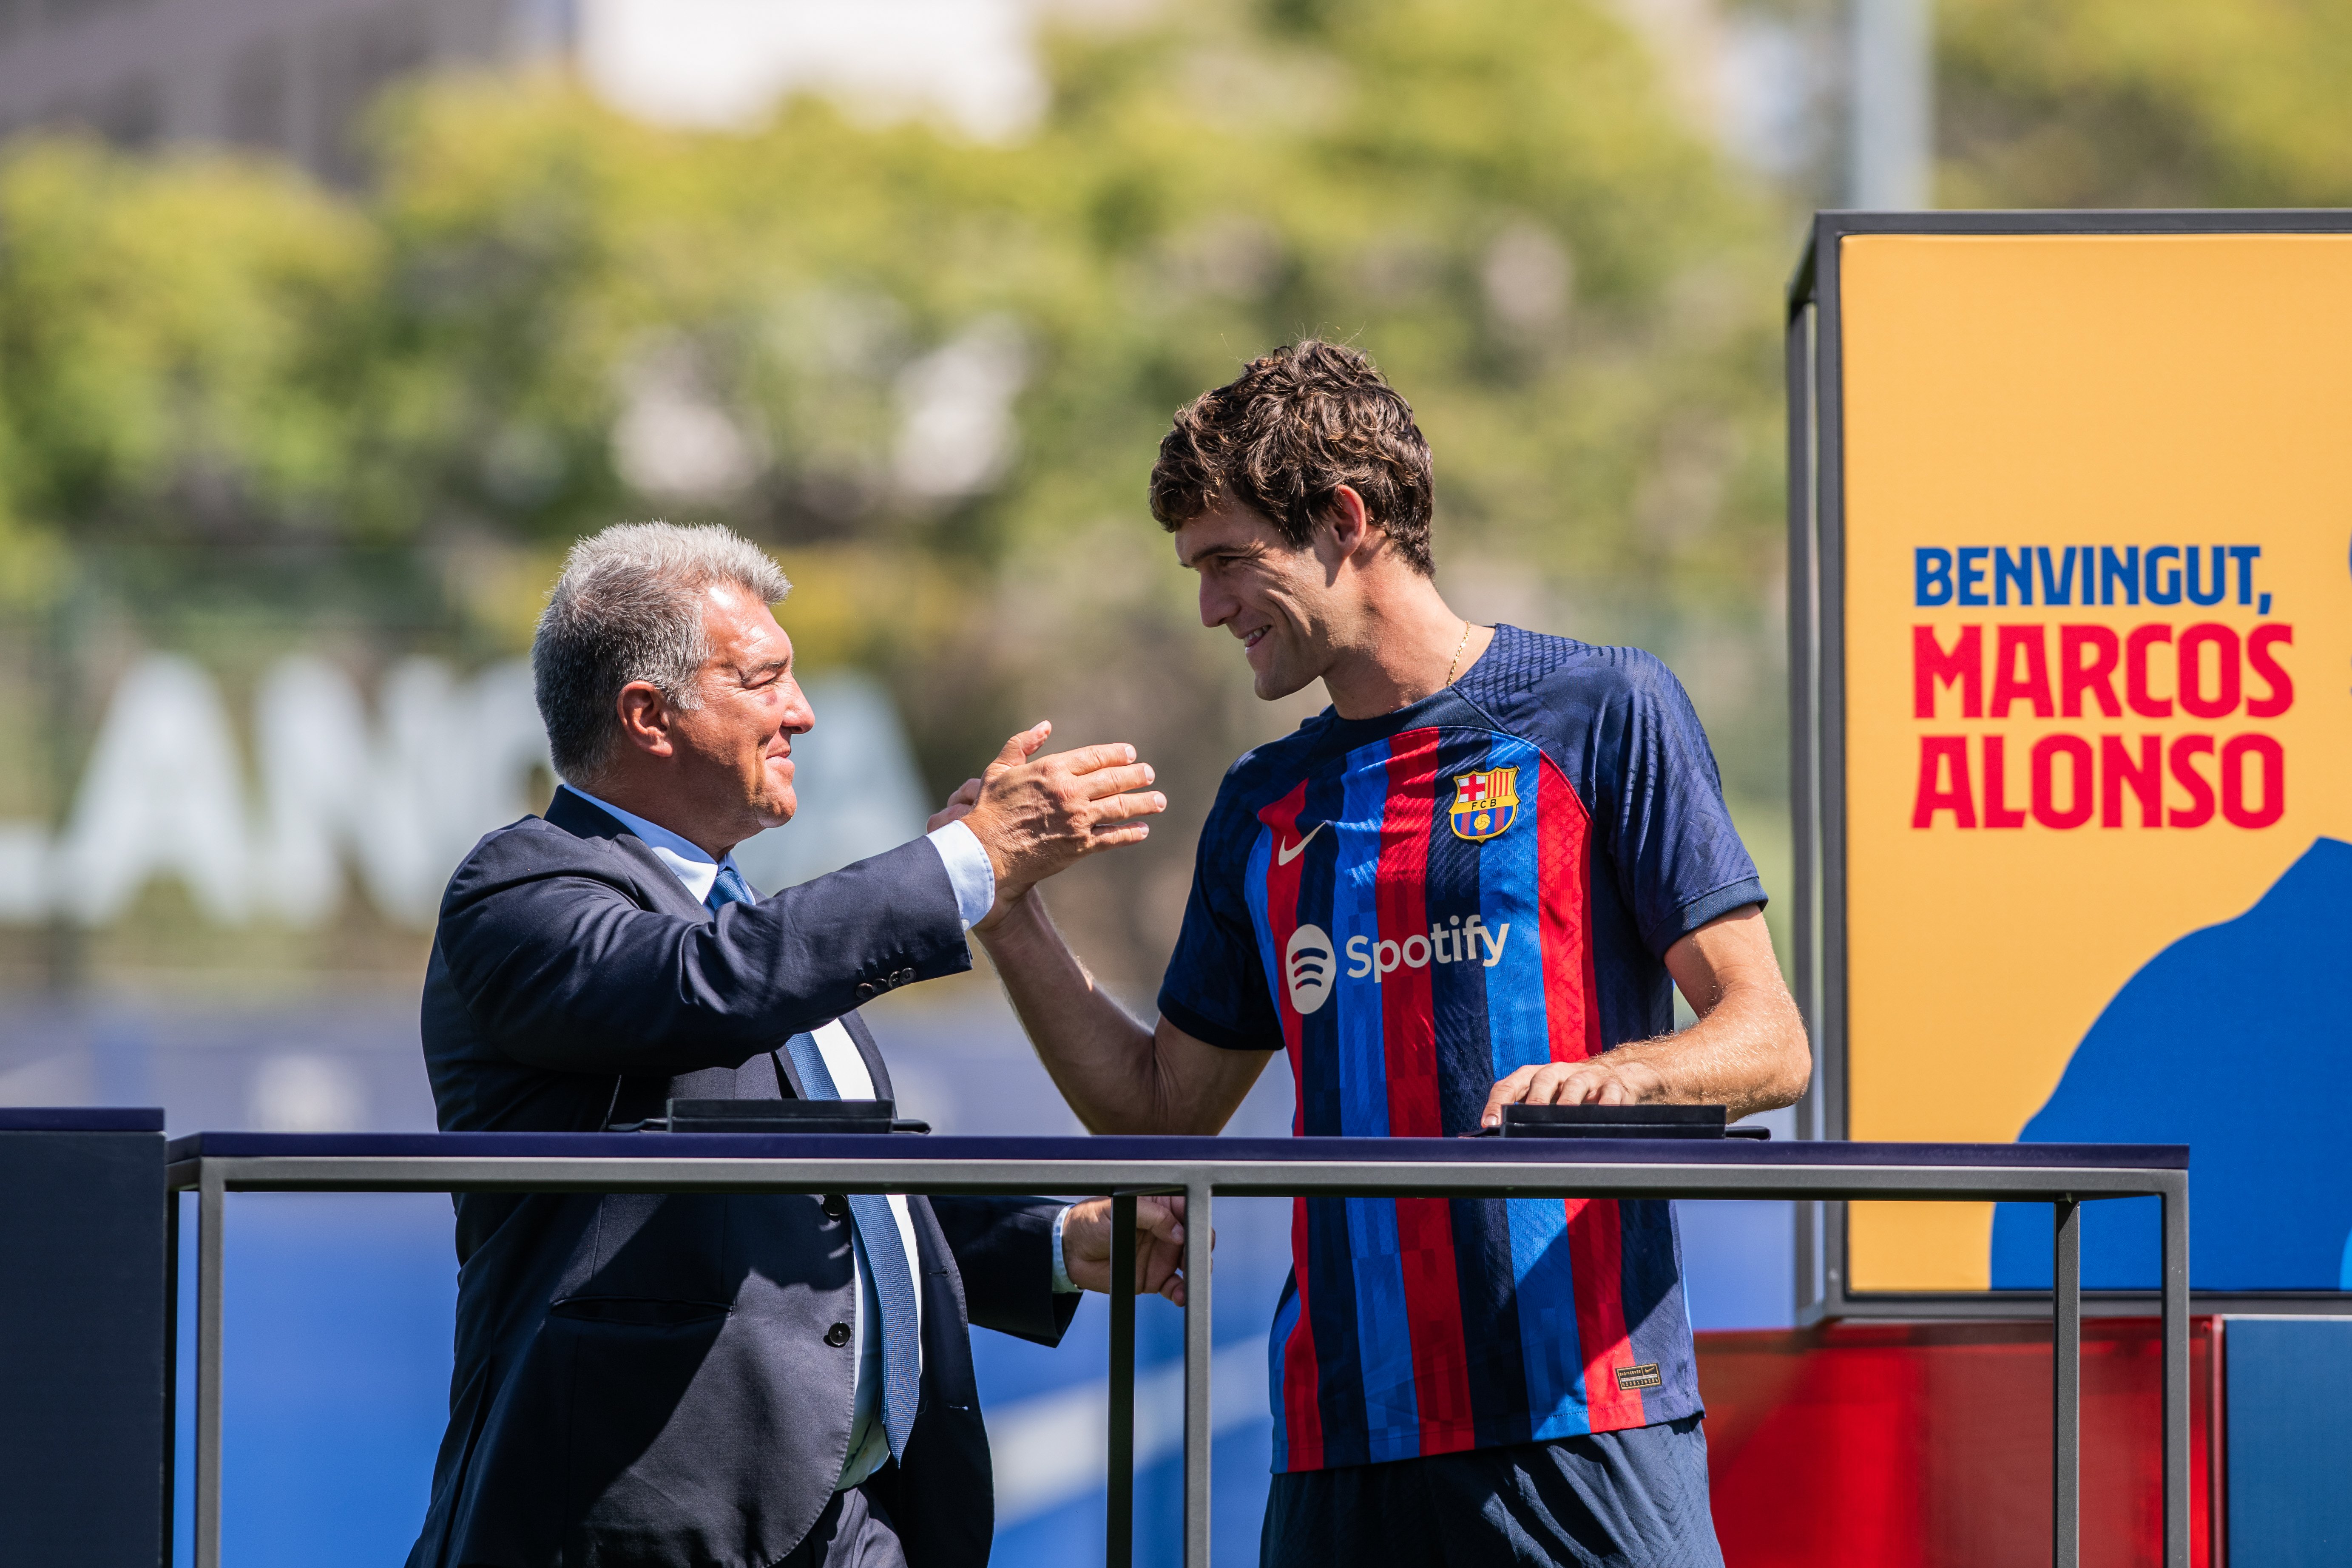 Marcos Alonso y Héctor Bellerín: los laterales del Barça que viven en dos realidades opuestas